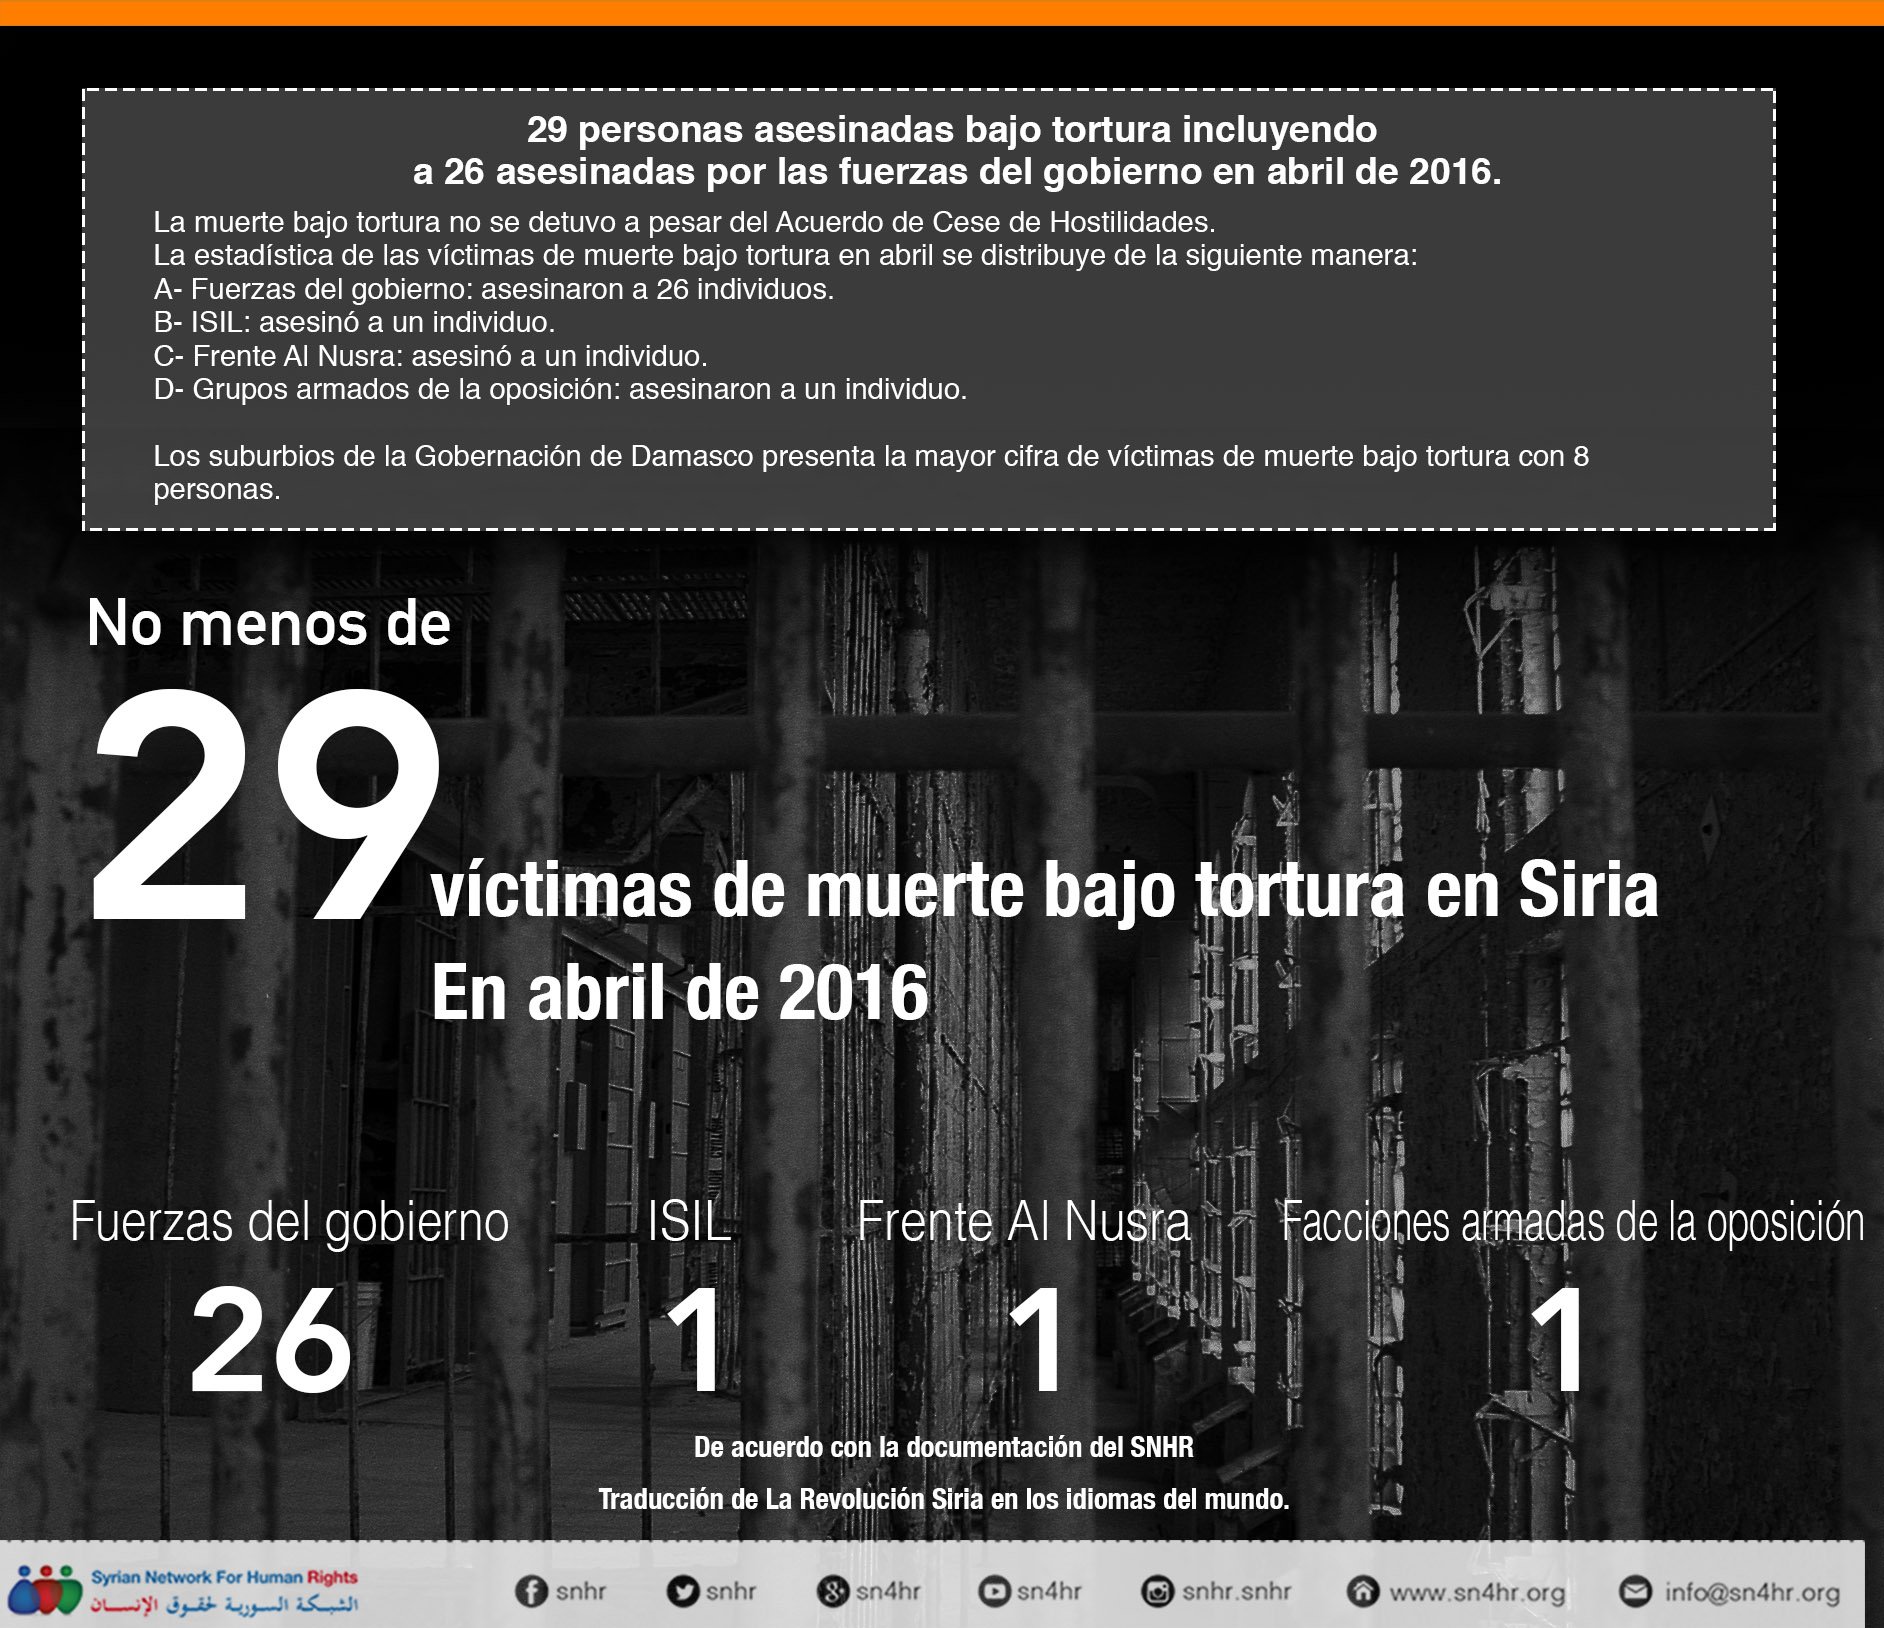 مقتل 29 شخصاً بسبب التعذيب في نيسان 2016 26 منهم على يد القوات الحكومية